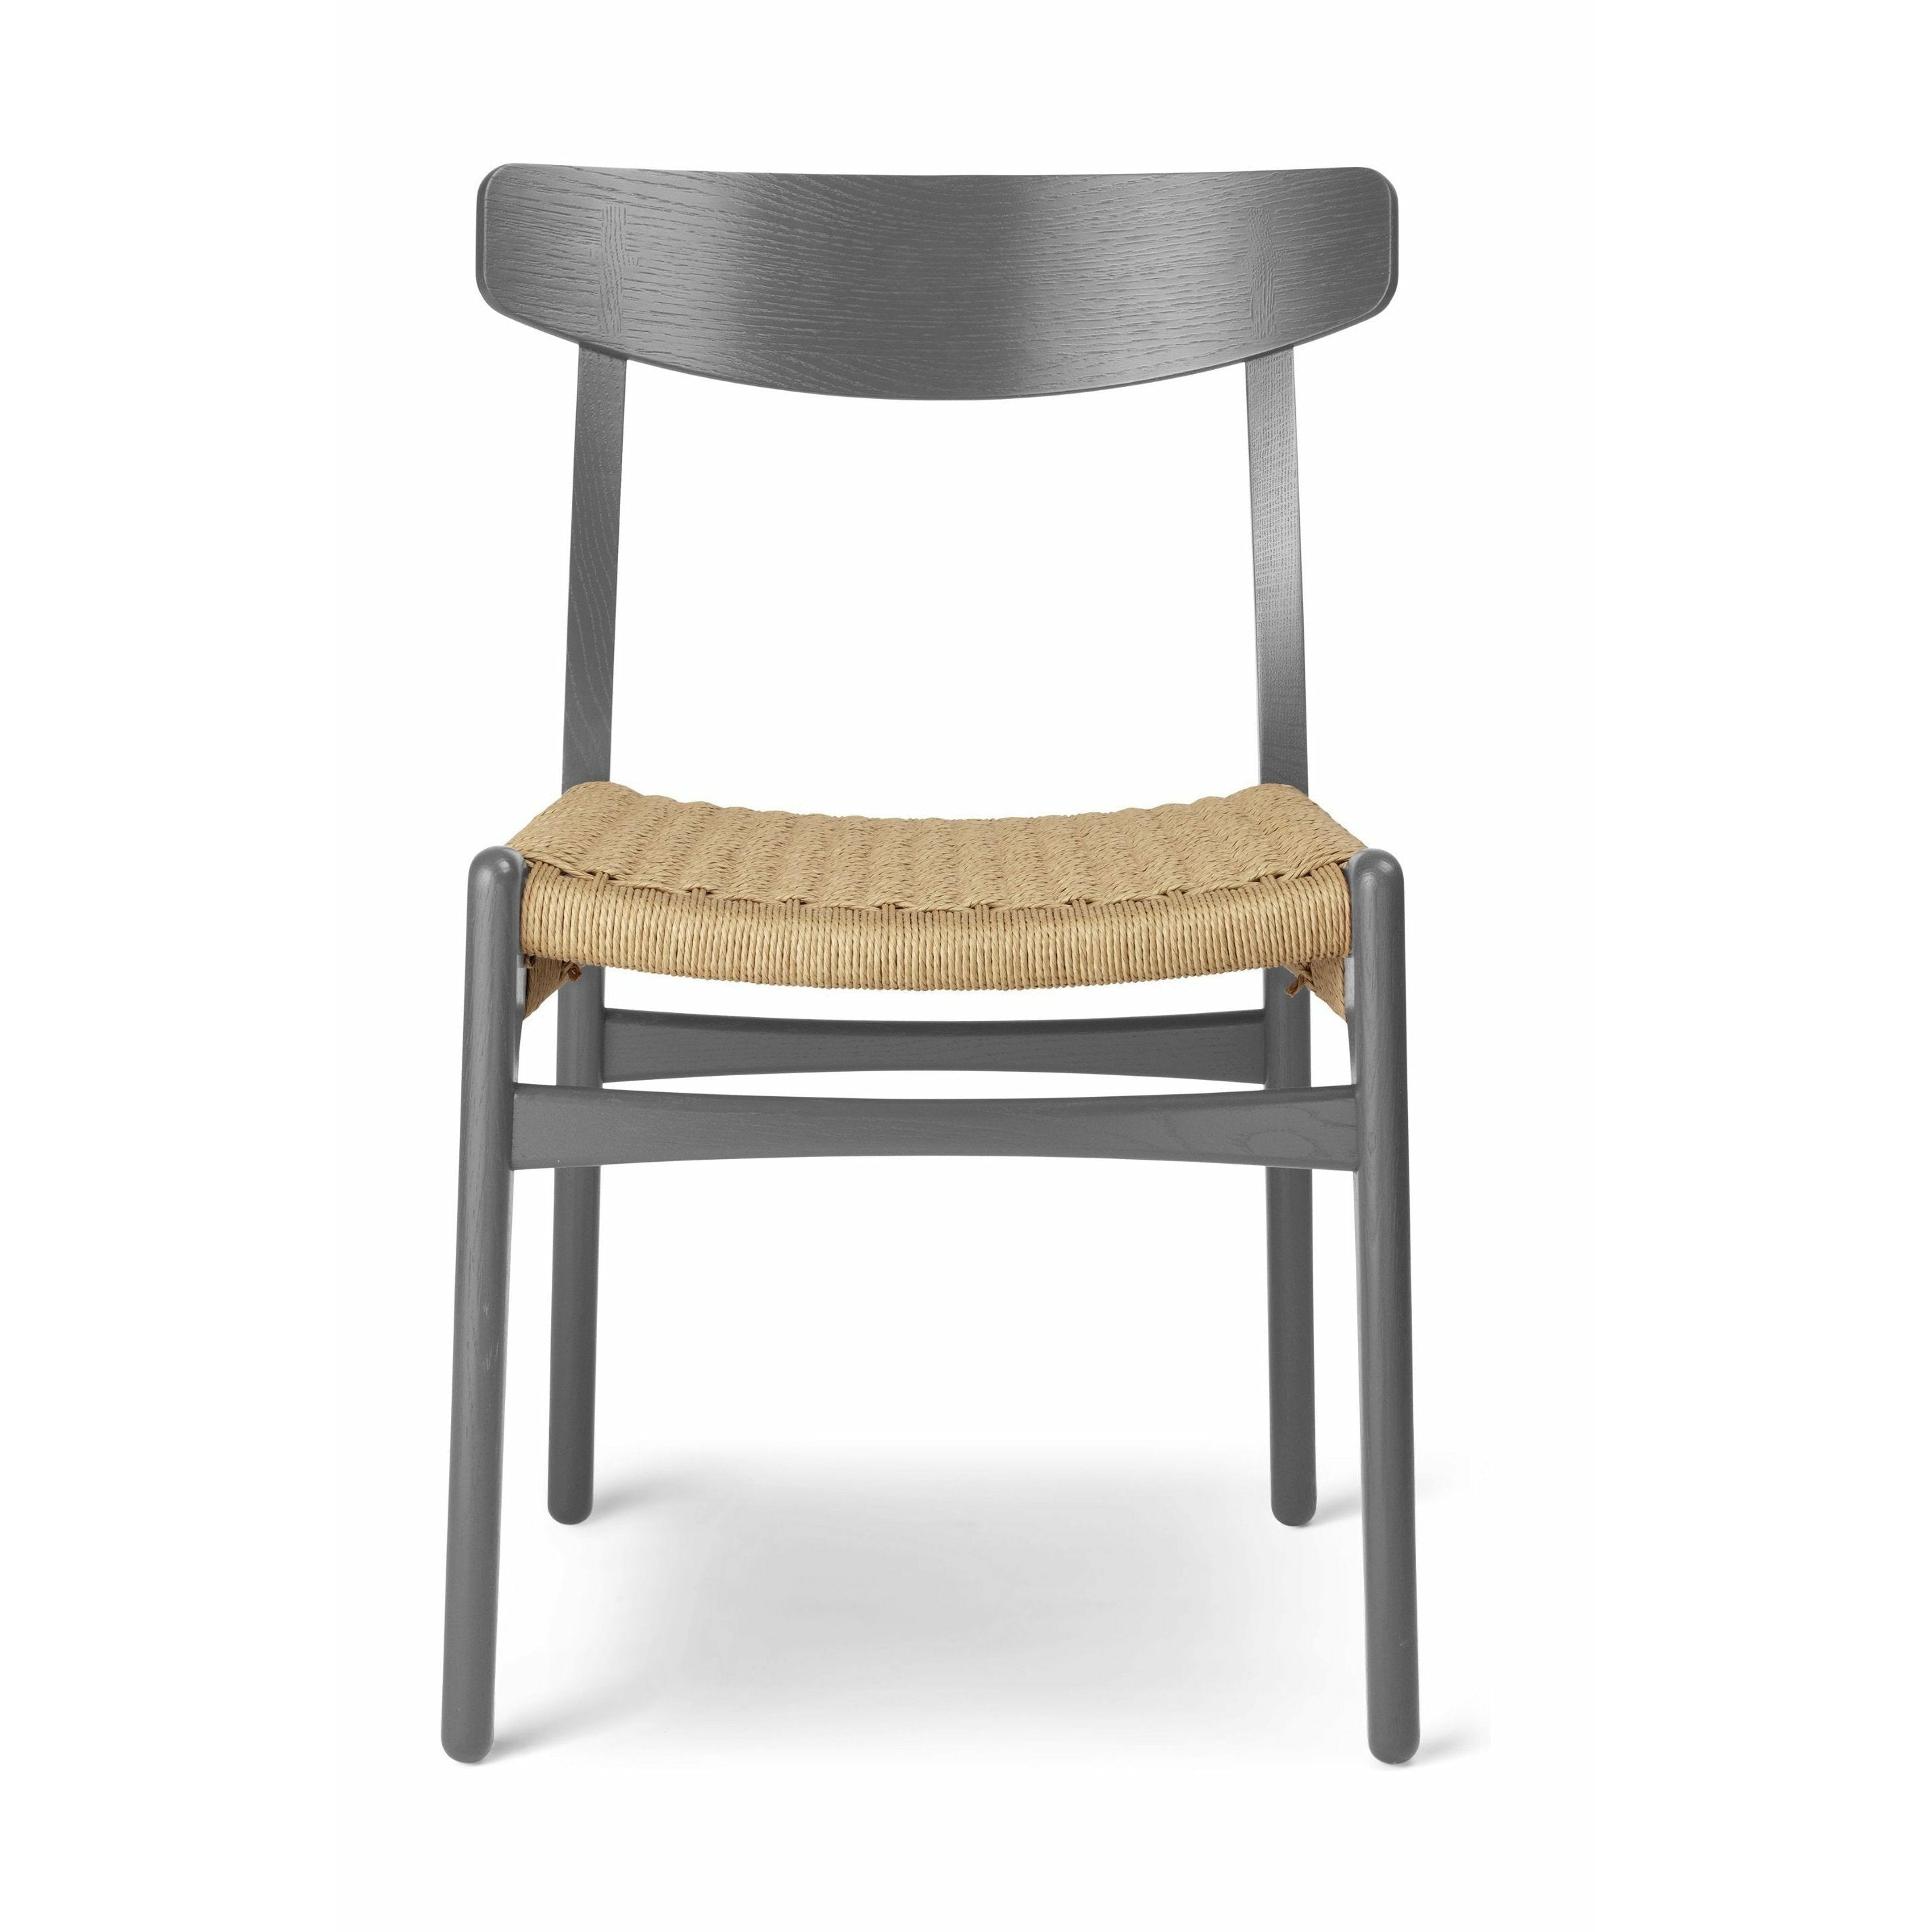 Carl Hansen CH23 chaise chaise, brun ardoise / cordon naturel